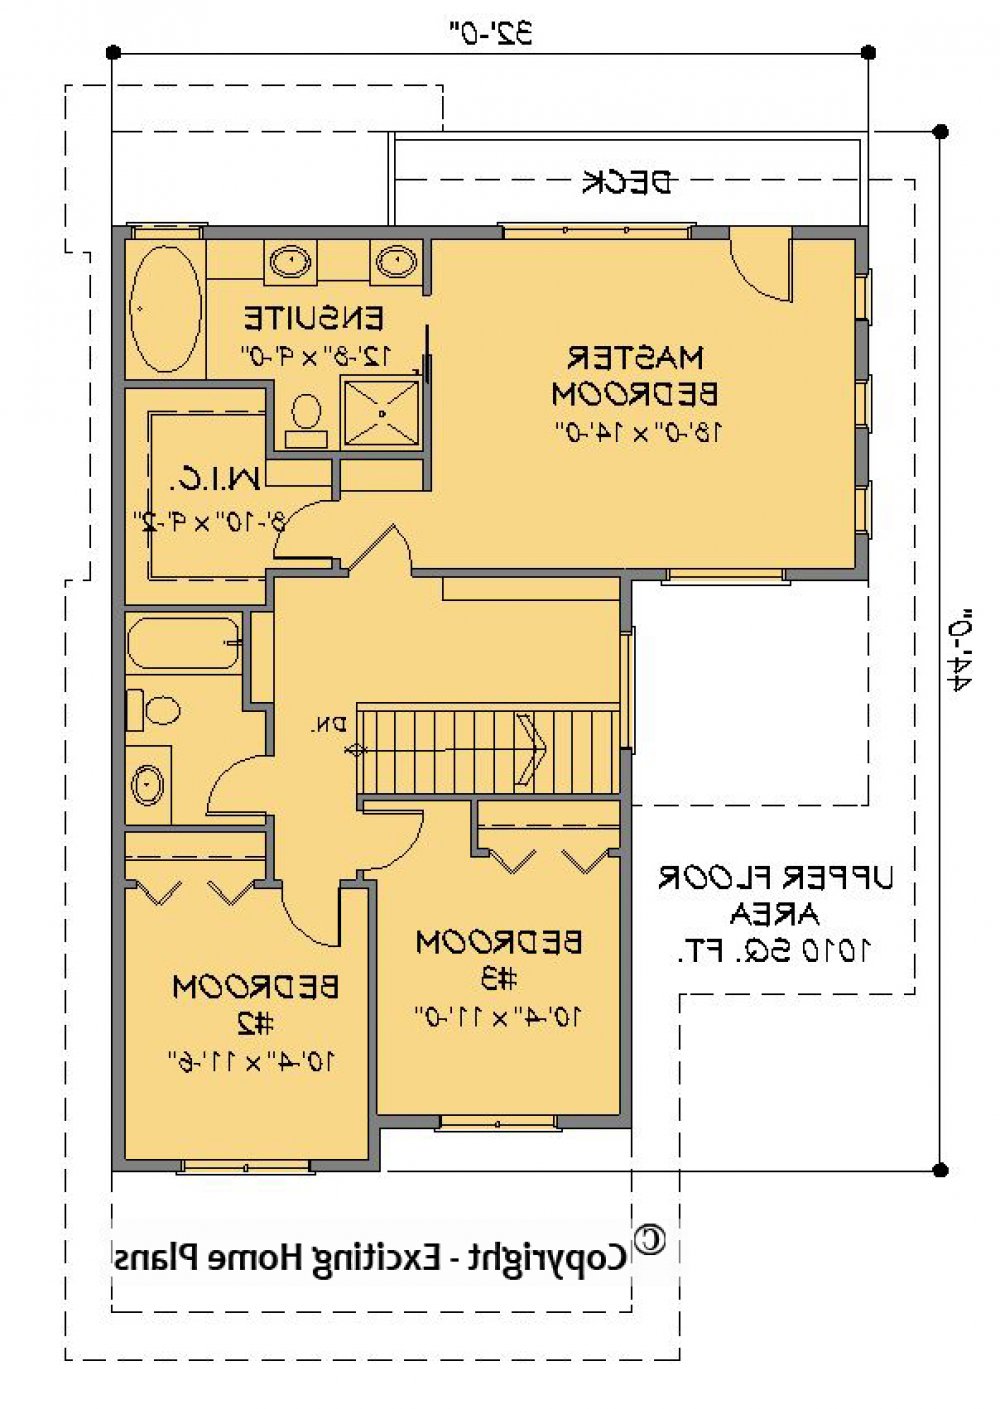 House Plan E1585-10 Upper Floor Plan REVERSE